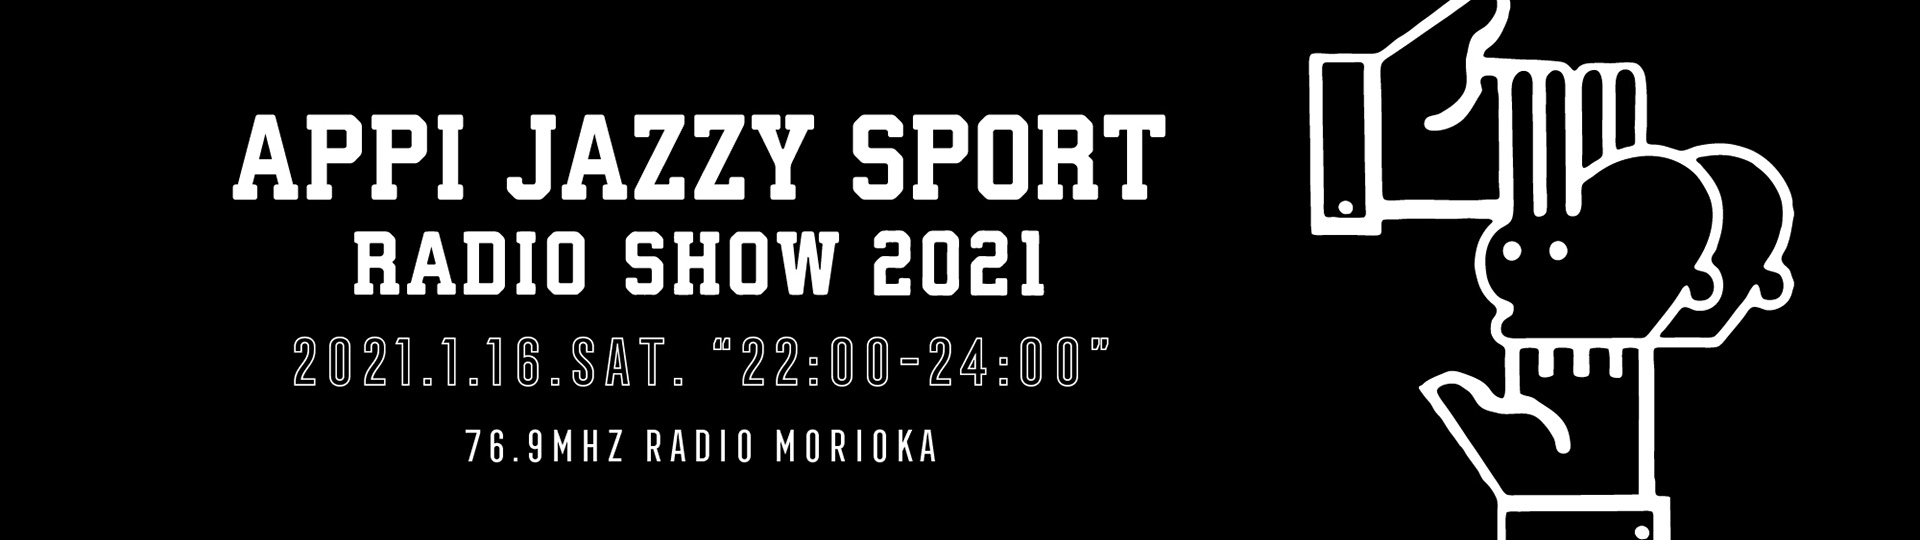 APPI JAZZY SPORT 2021 RADIO SHOW